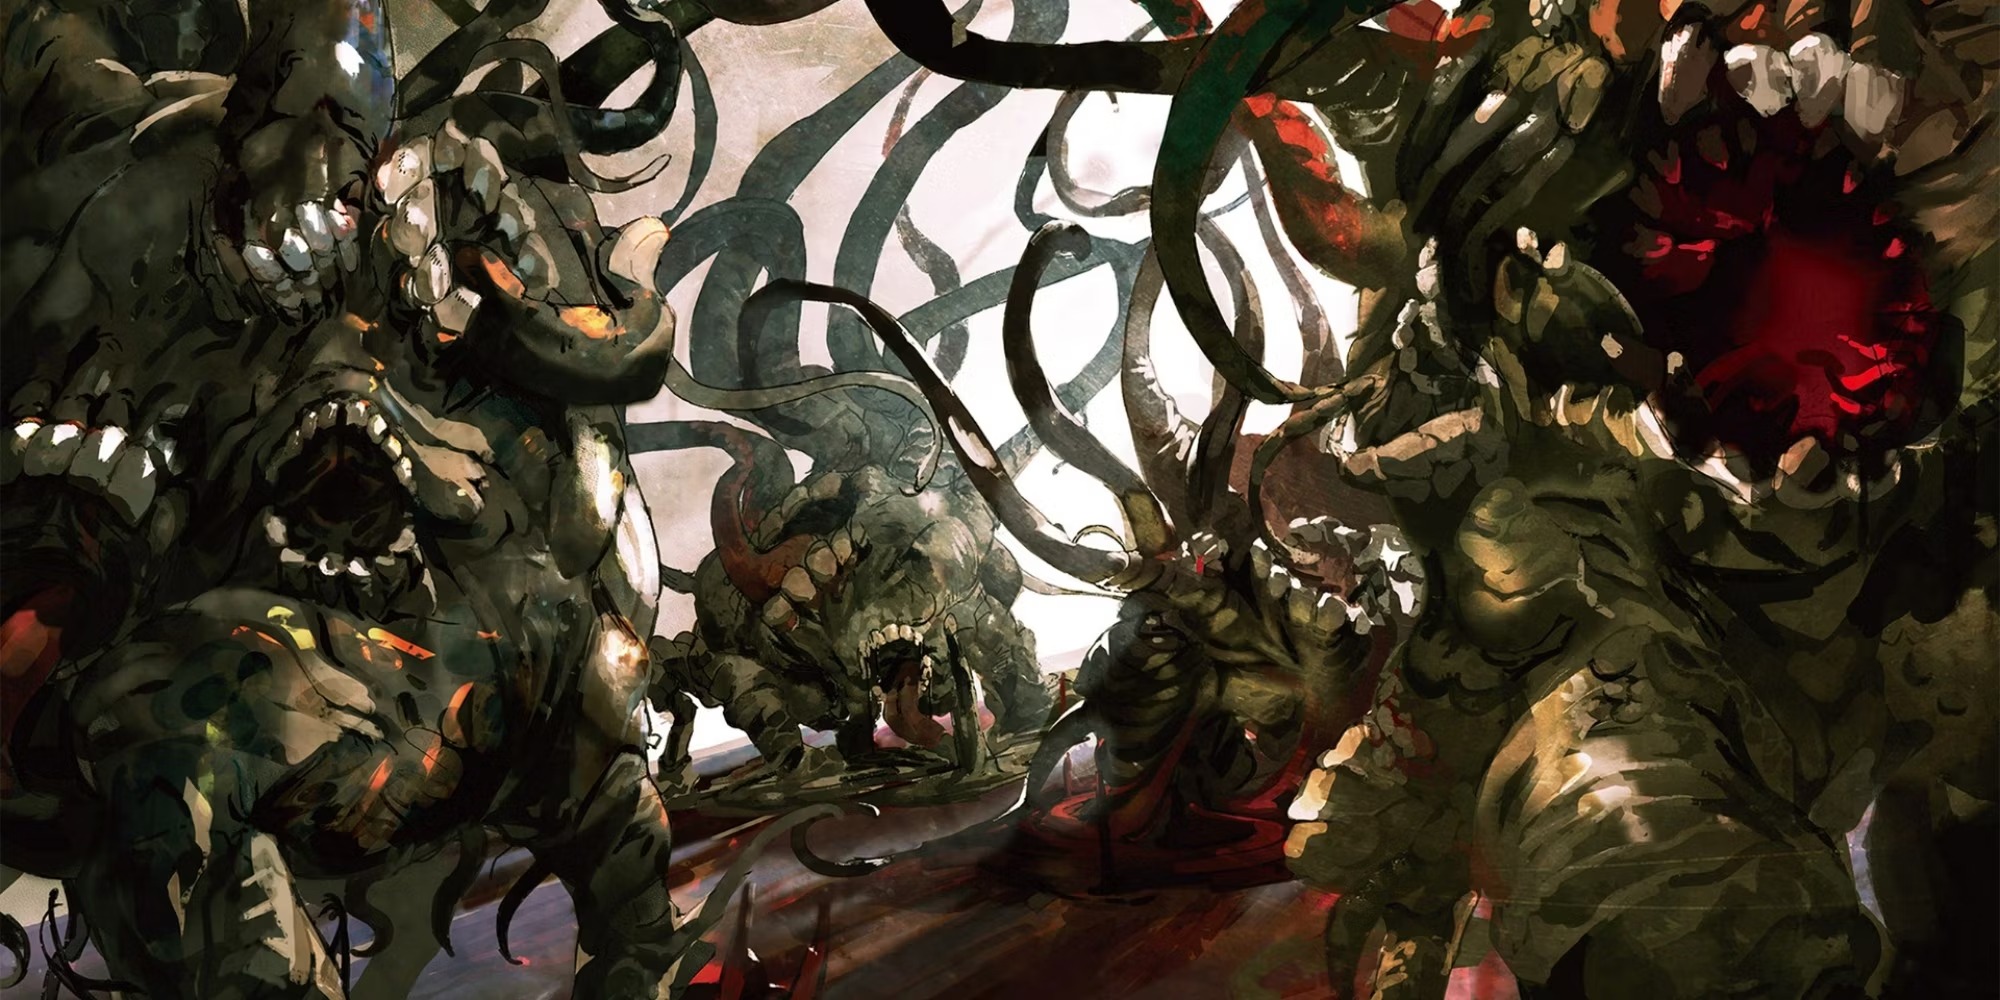 A convocação está feita! Confira as artes de Ainz e seus súditos na quarta  temporada de Overlord - Crunchyroll Notícias